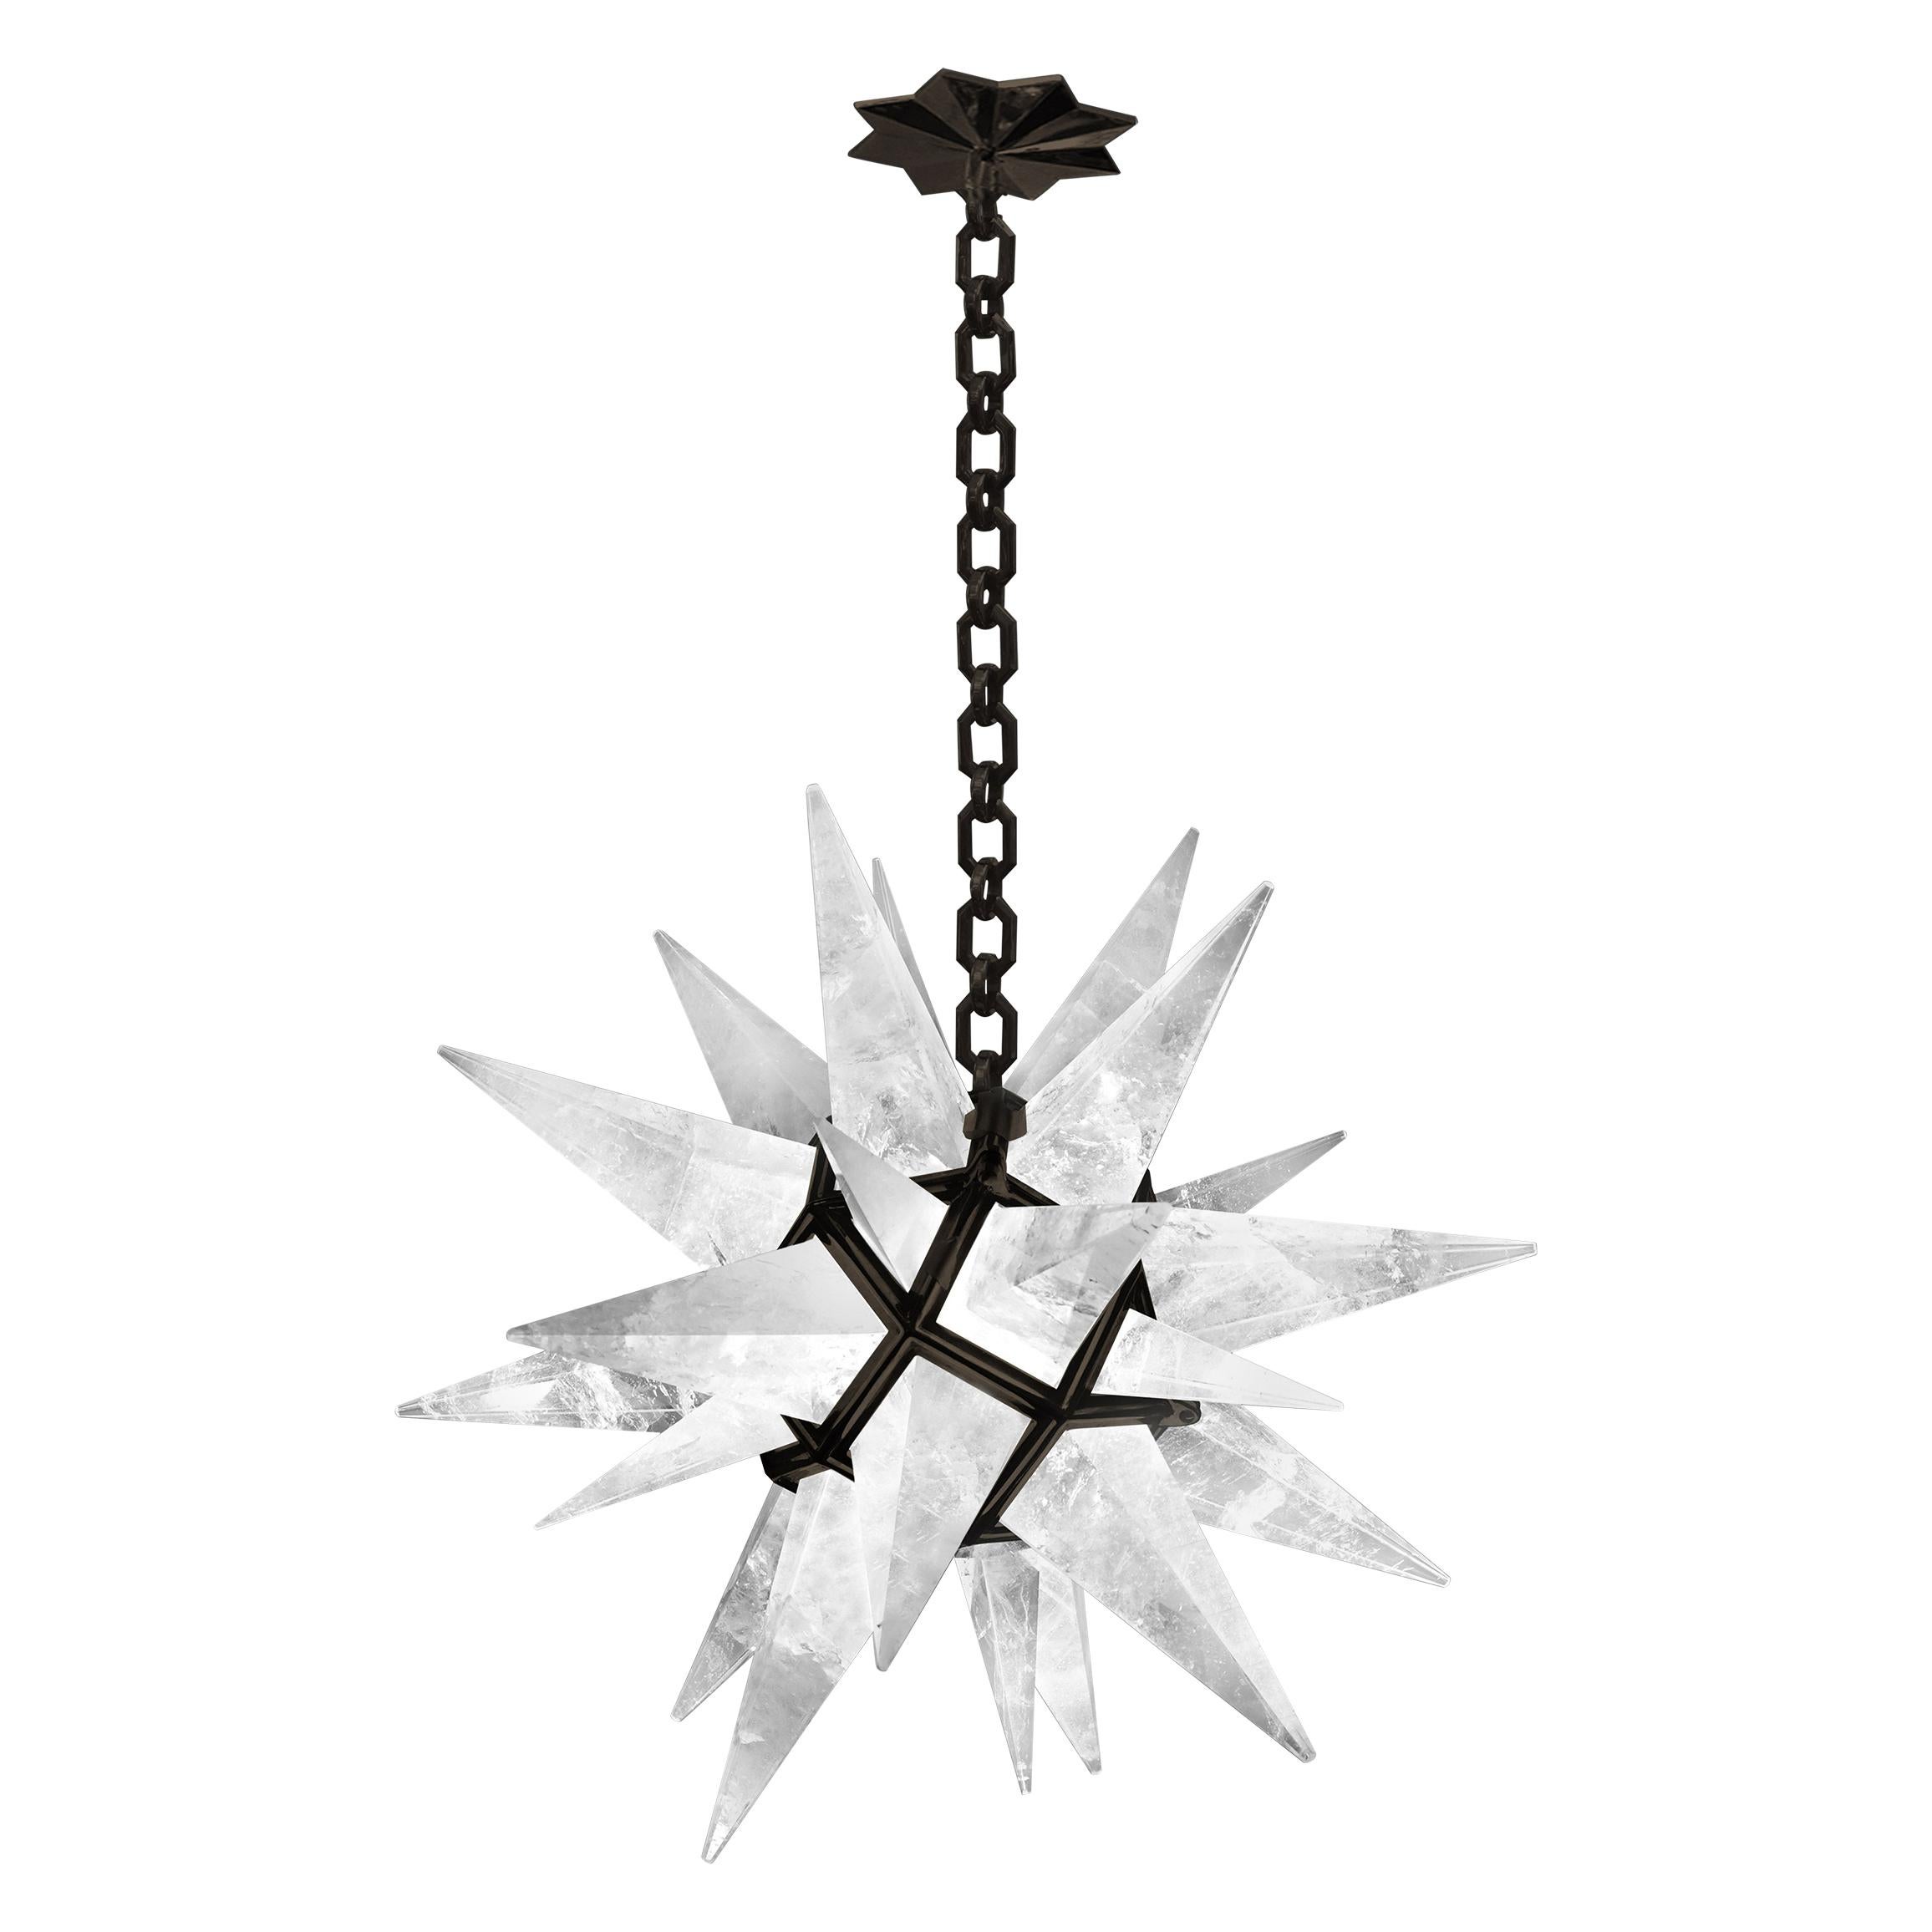 Fein geschnitzter sternförmiger Bergkristall-Kronleuchter mit Rahmen aus antikem Messing. Erstellt von Phoenix Gallery, NYC.
Der Kronleuchter ist 27